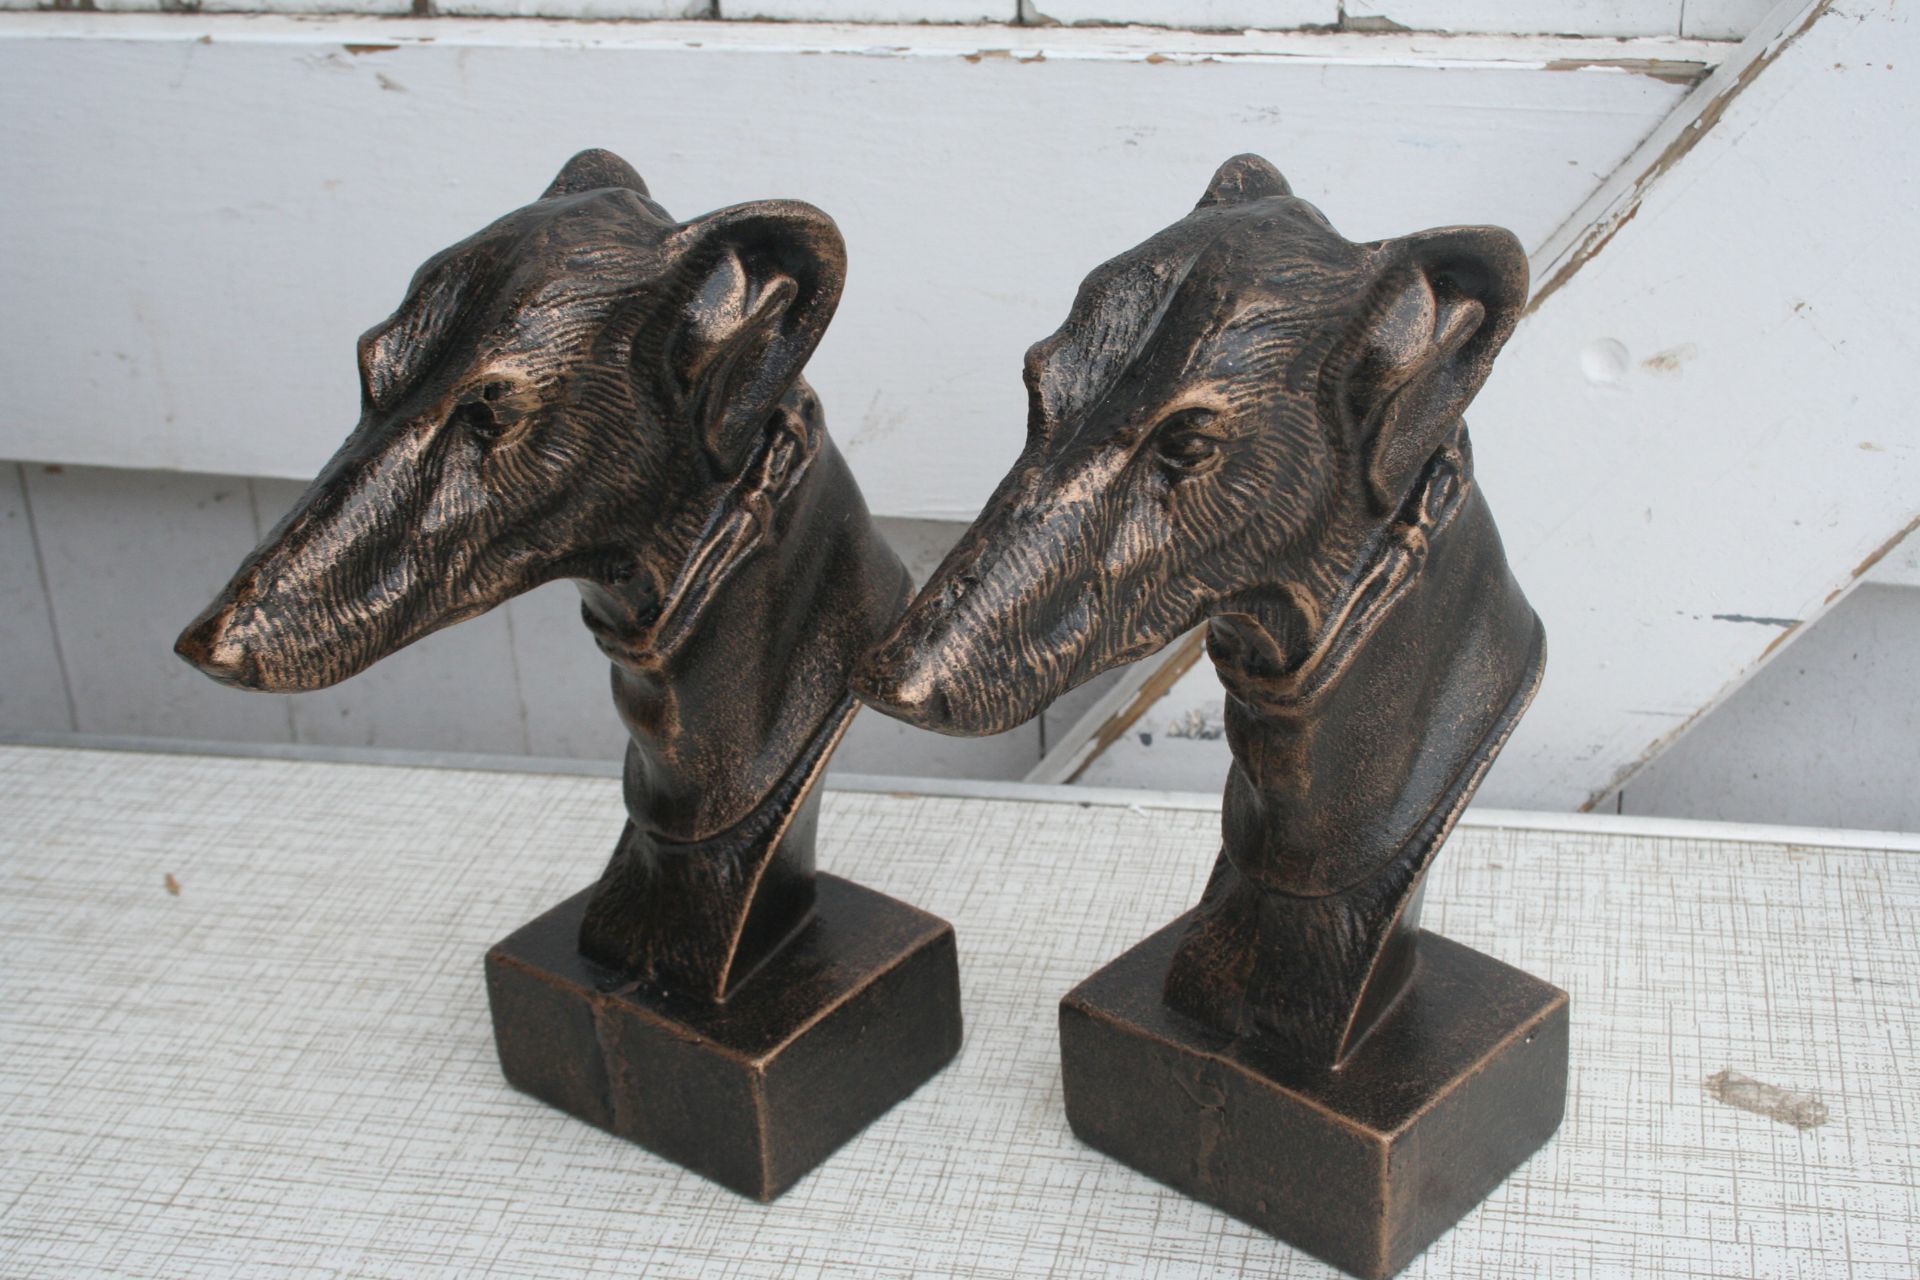 2 cast greyhound heads